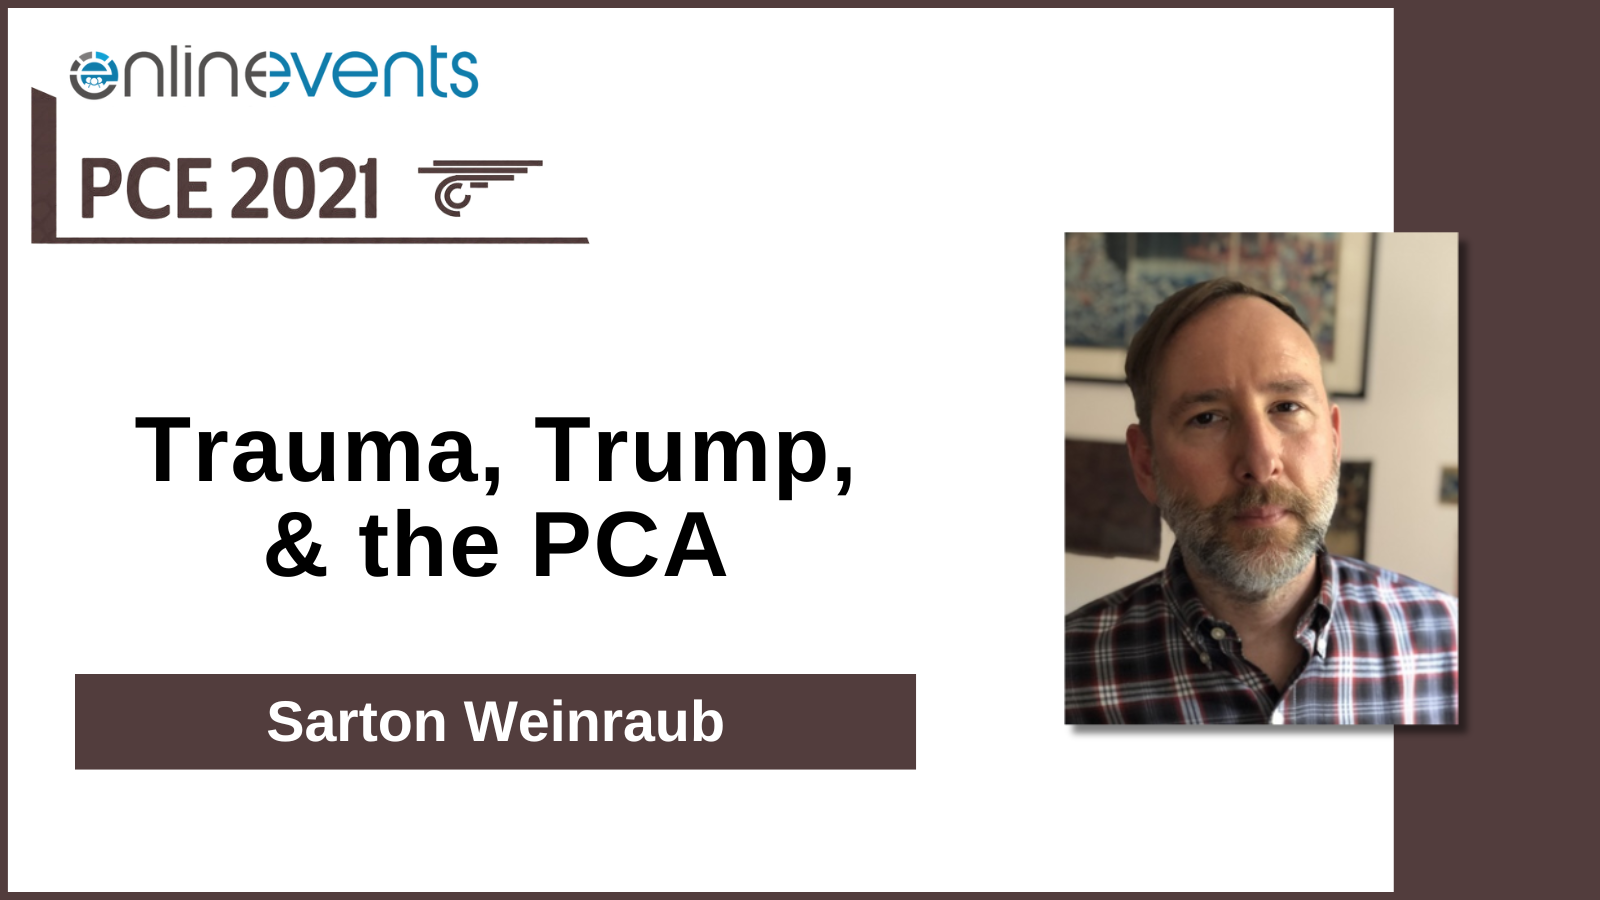 Trauma, Trump, & the PCA - Sarton Weinraub